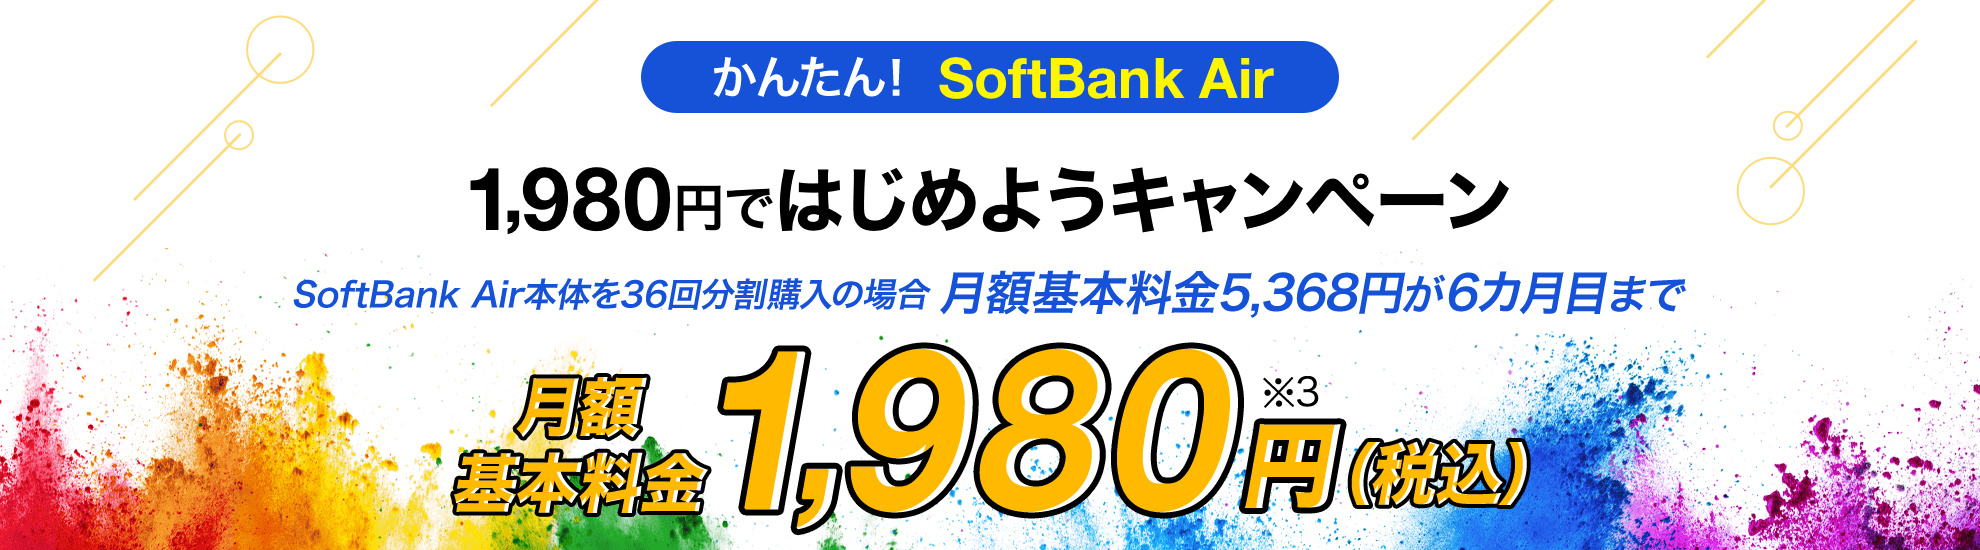 かんたん！SoftBank Air 1,980円ではじめようキャンペーン SoftBank Air本体を36回分割購入の場合 月額料金が6カ月目まで 月額基本料金1,980円（税込）※3